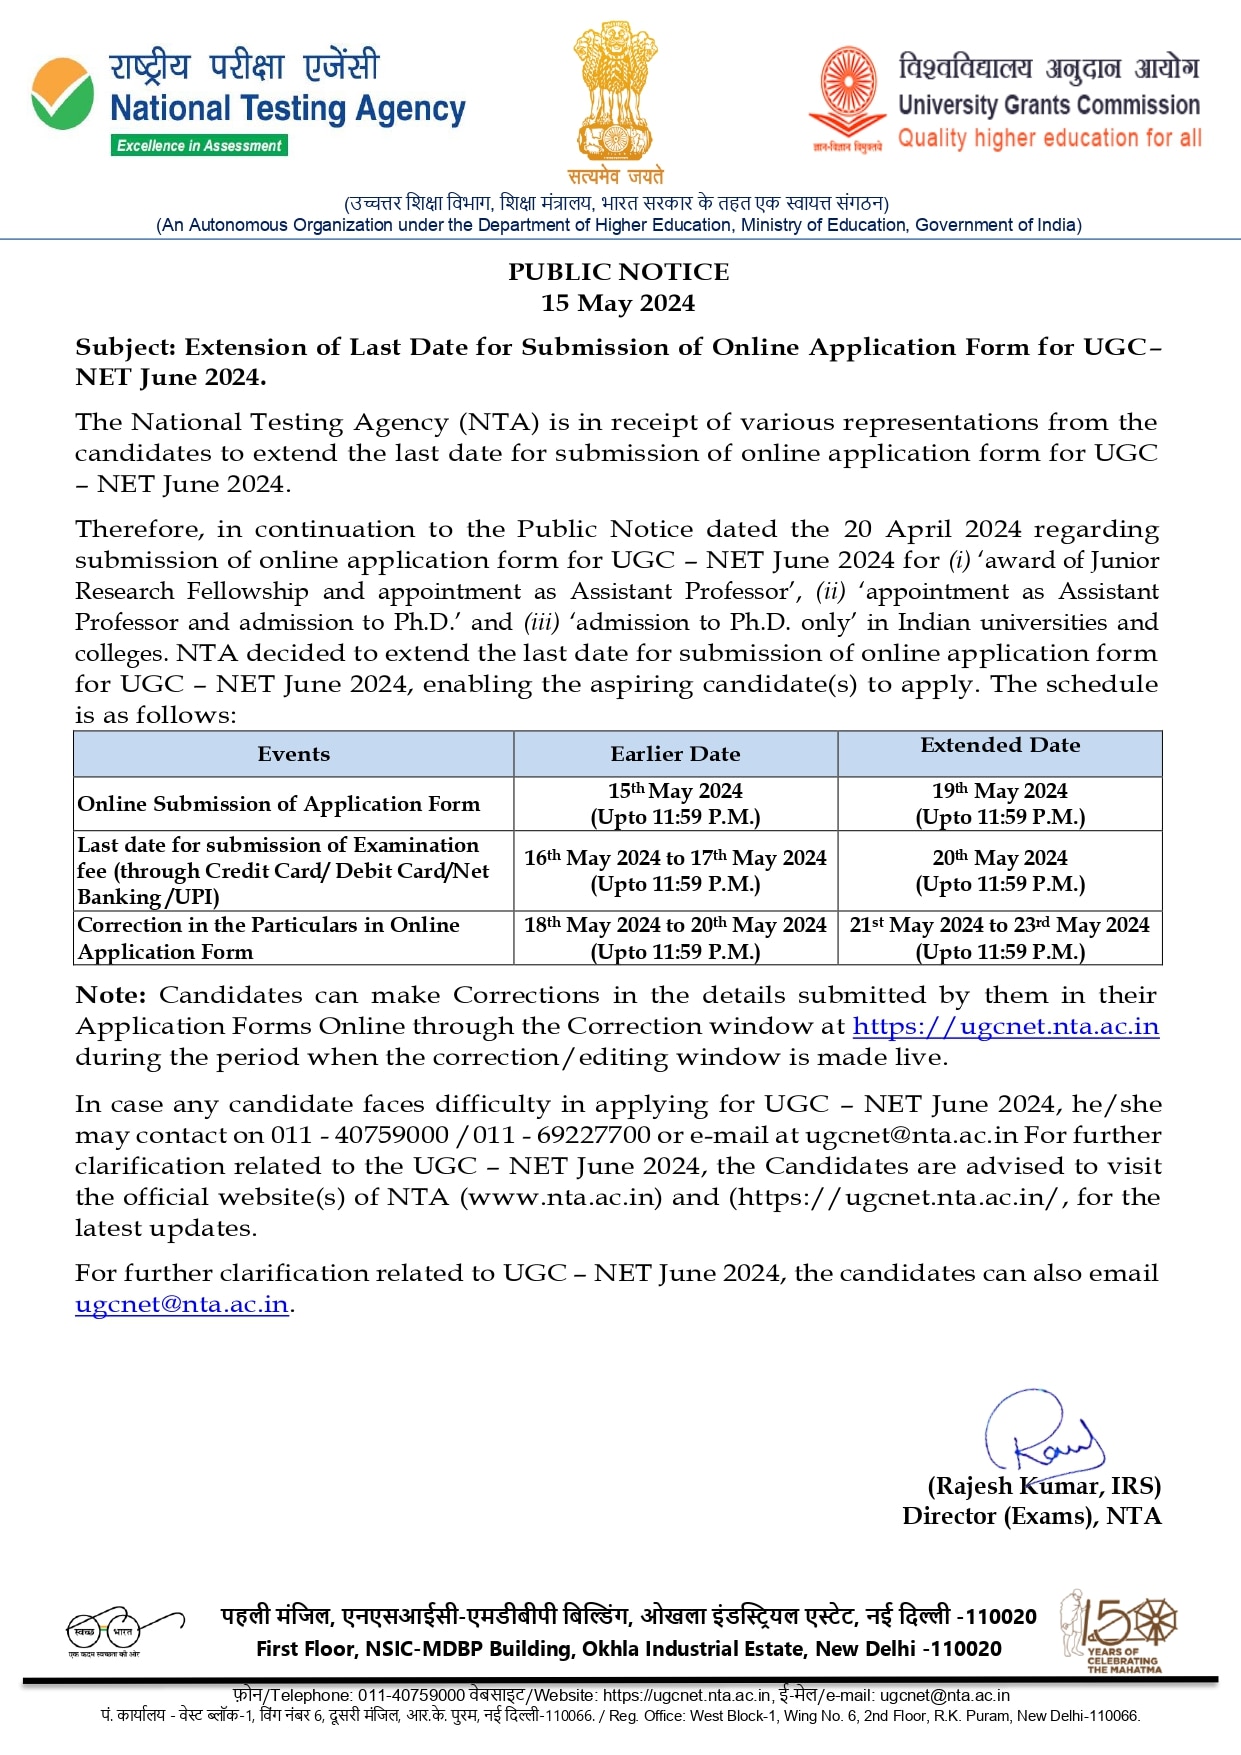 UGC NET: యూజీసీ నెట్ జూన్ - 2024 దరఖాస్తు గడువు మరోసారి పొడిగింపు, ఎప్పటివరకంటే?